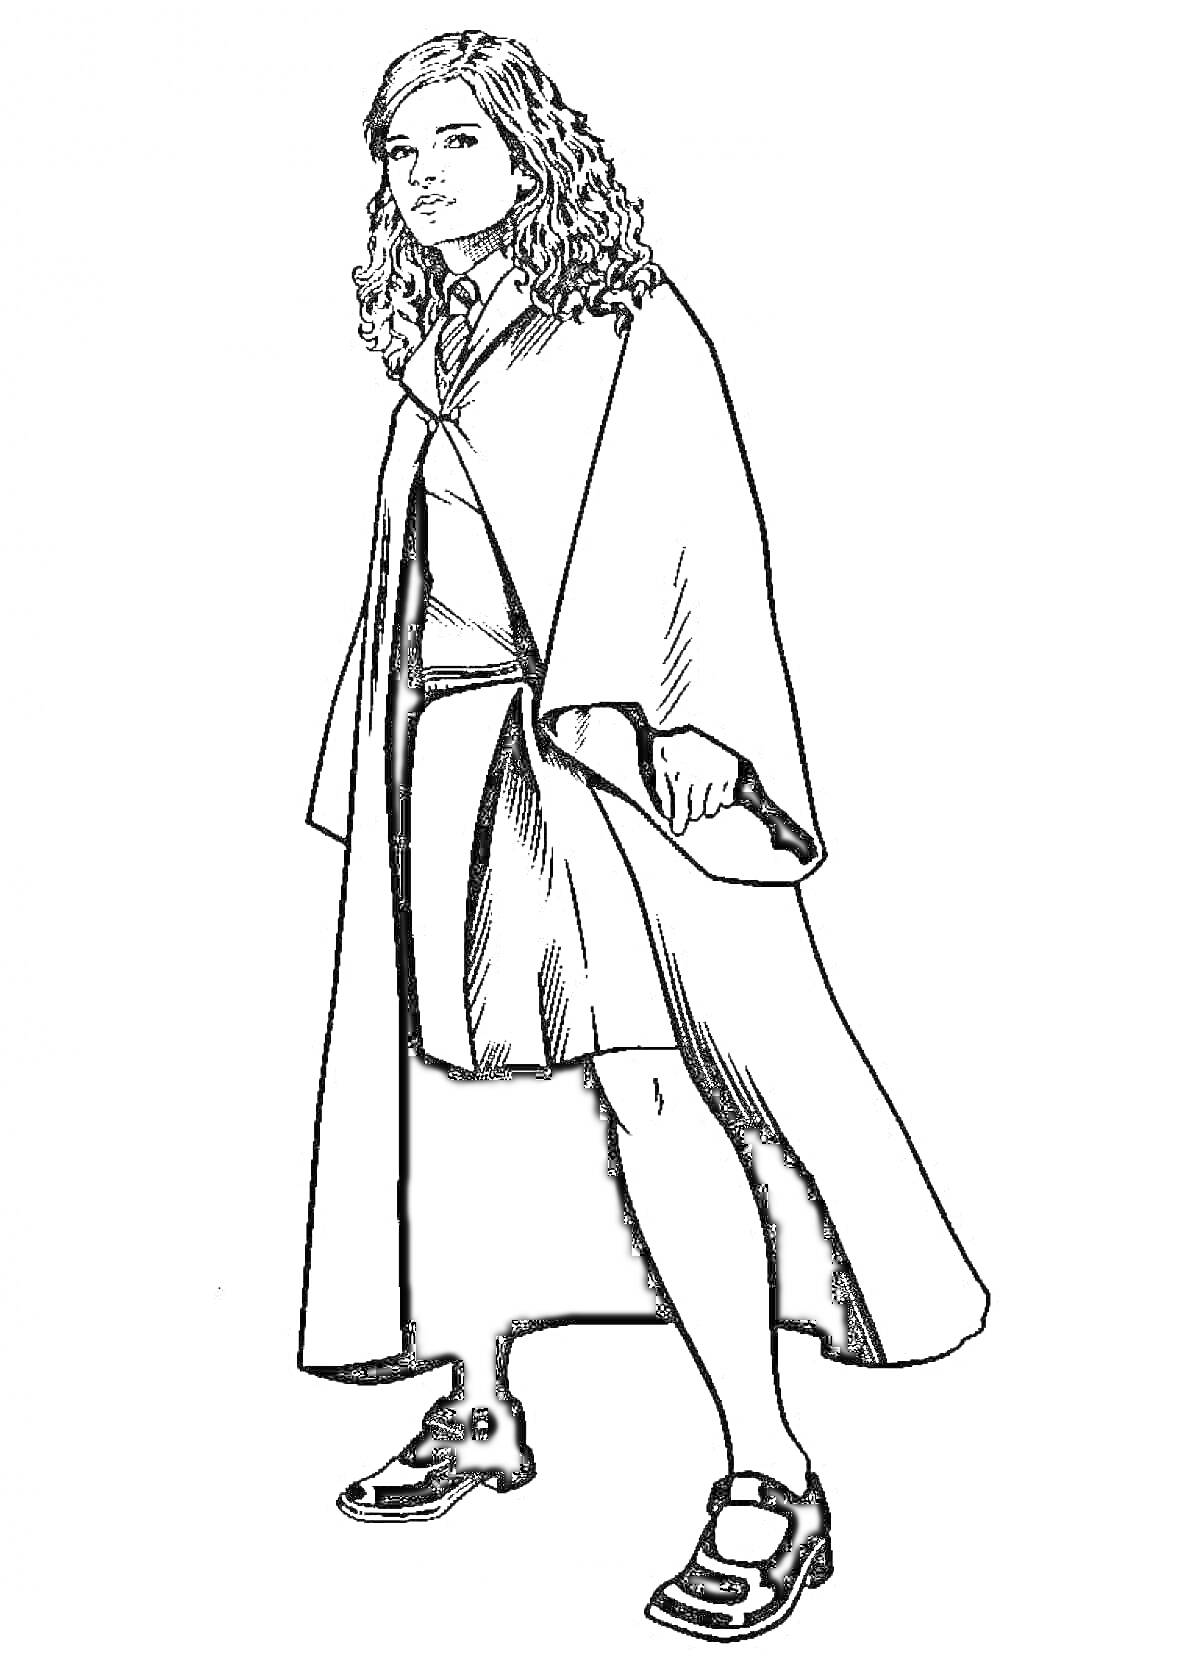 Раскраска Девочка с длинными кудрявыми волосами в мантии, школьной форме и туфлях, идет с задумчивым взглядом